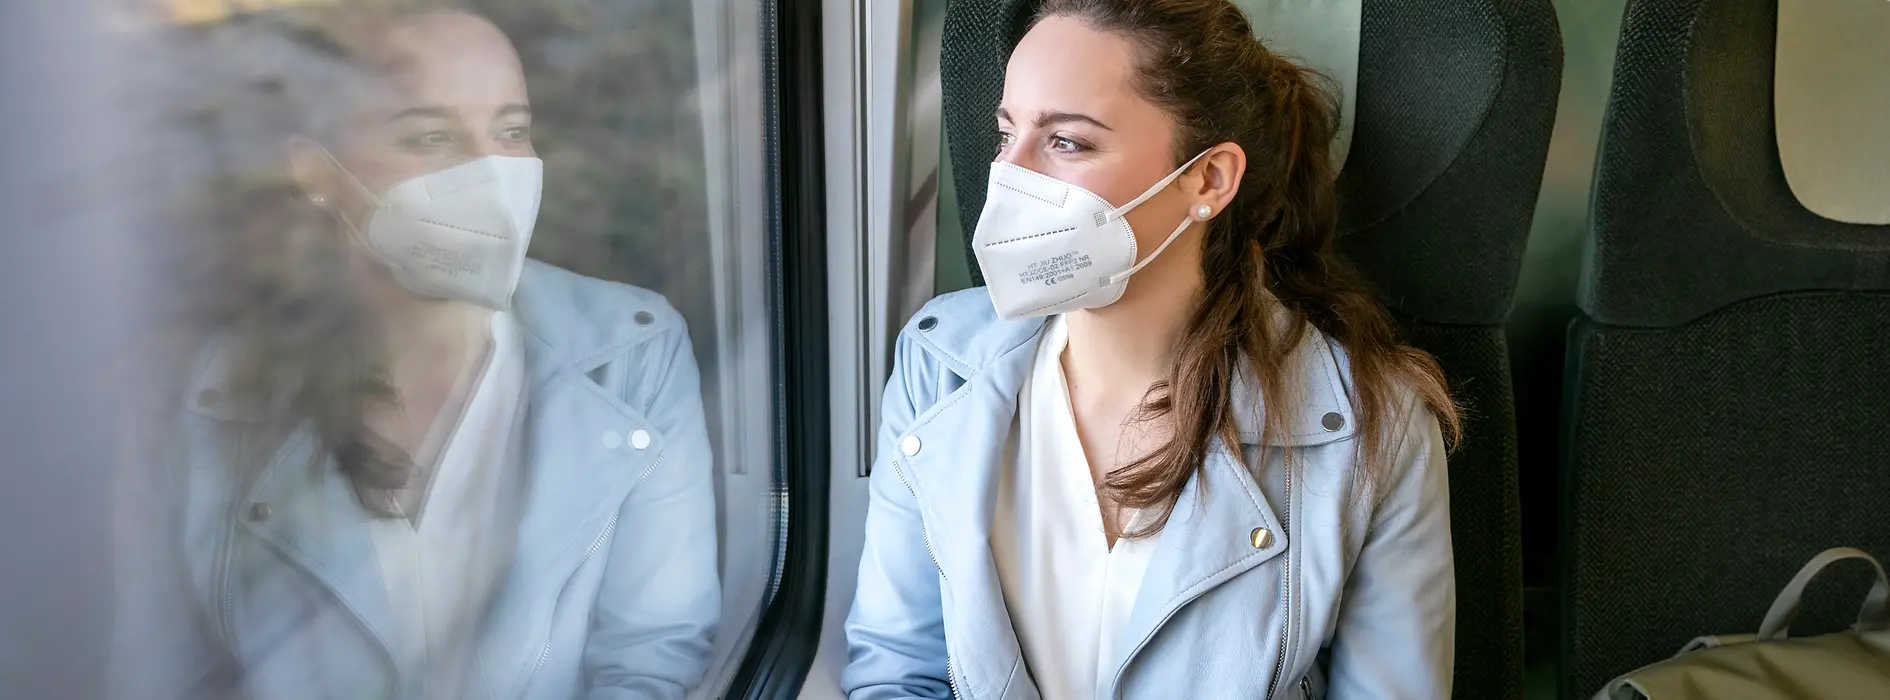 Femme portant un masque FFP2 dans le train